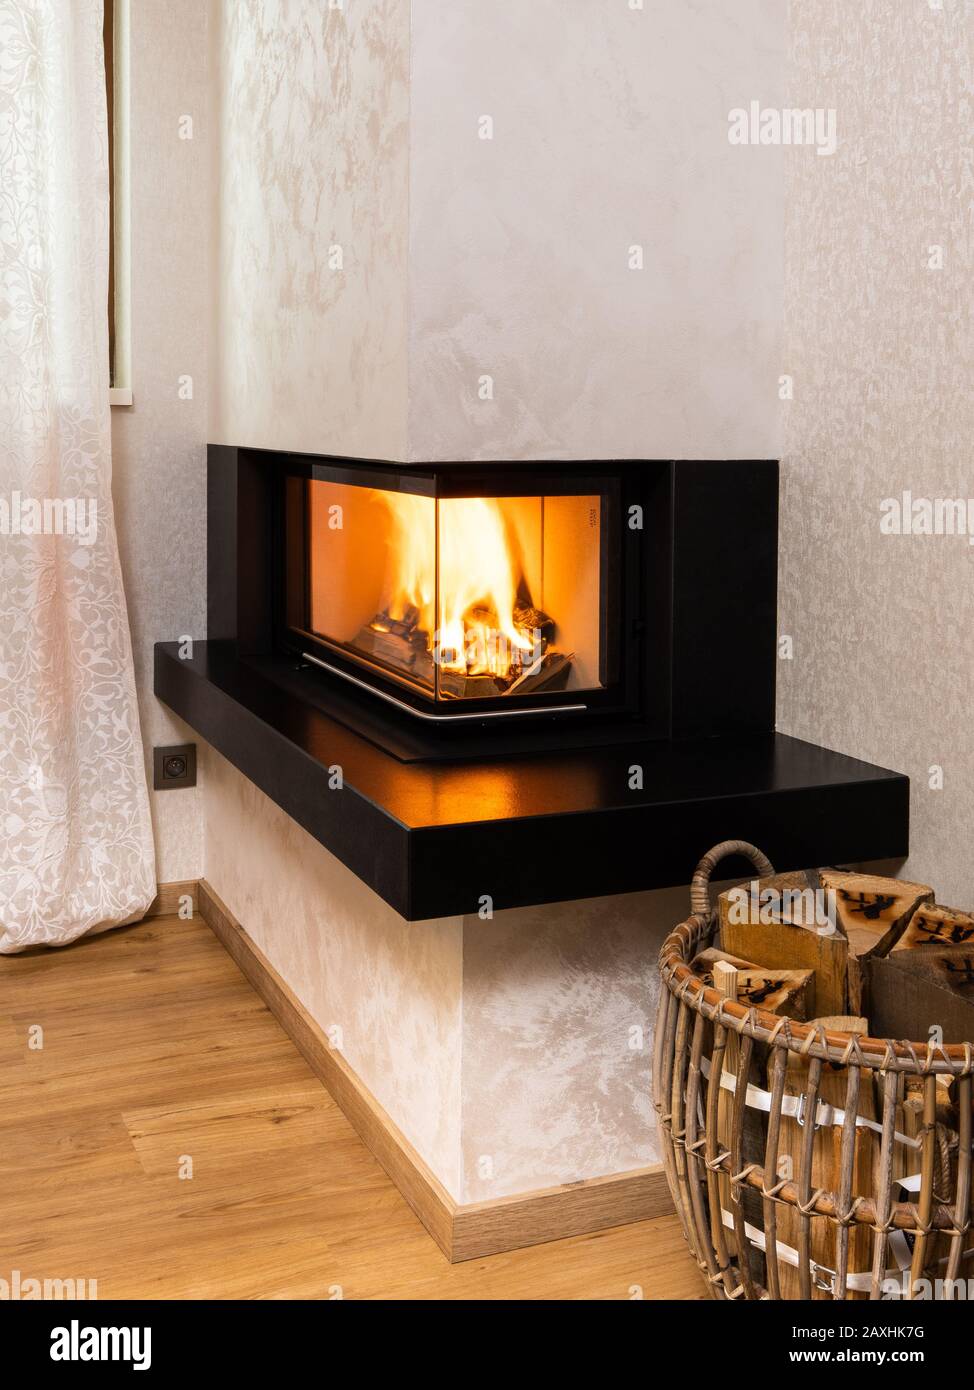 moderna y minimalista chimenea en la esquina de la habitación Fotografía de  stock - Alamy